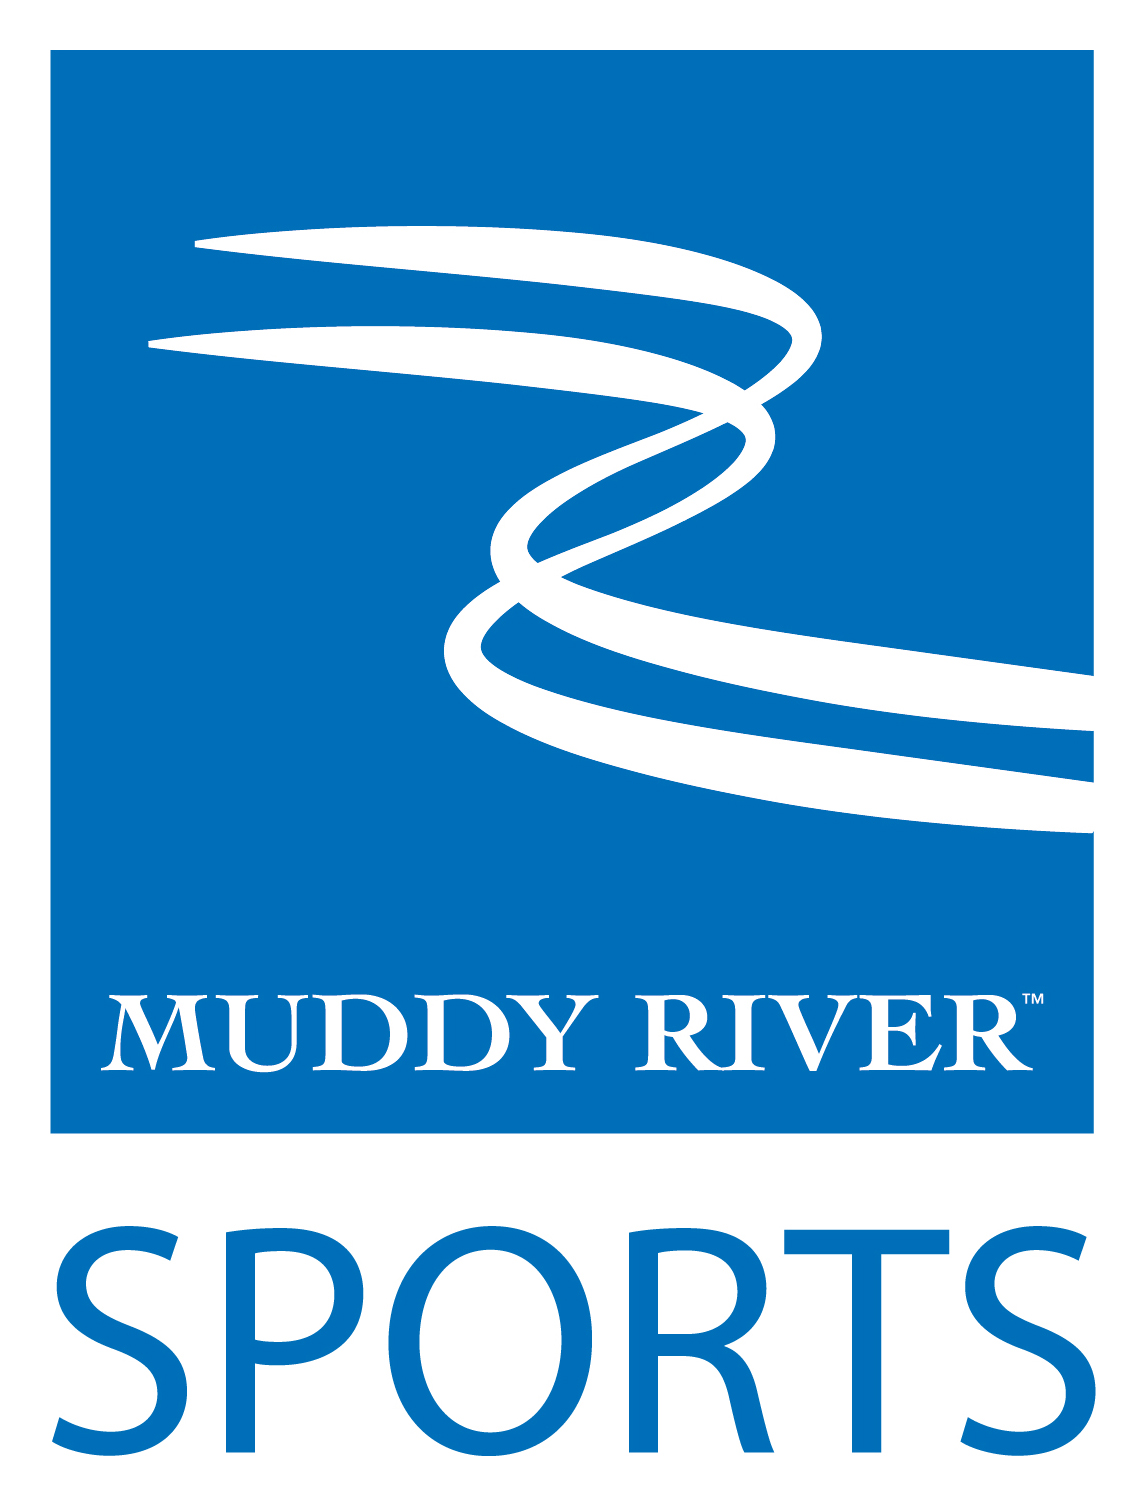 Matt Schuckman Archives - Muddy River Sports